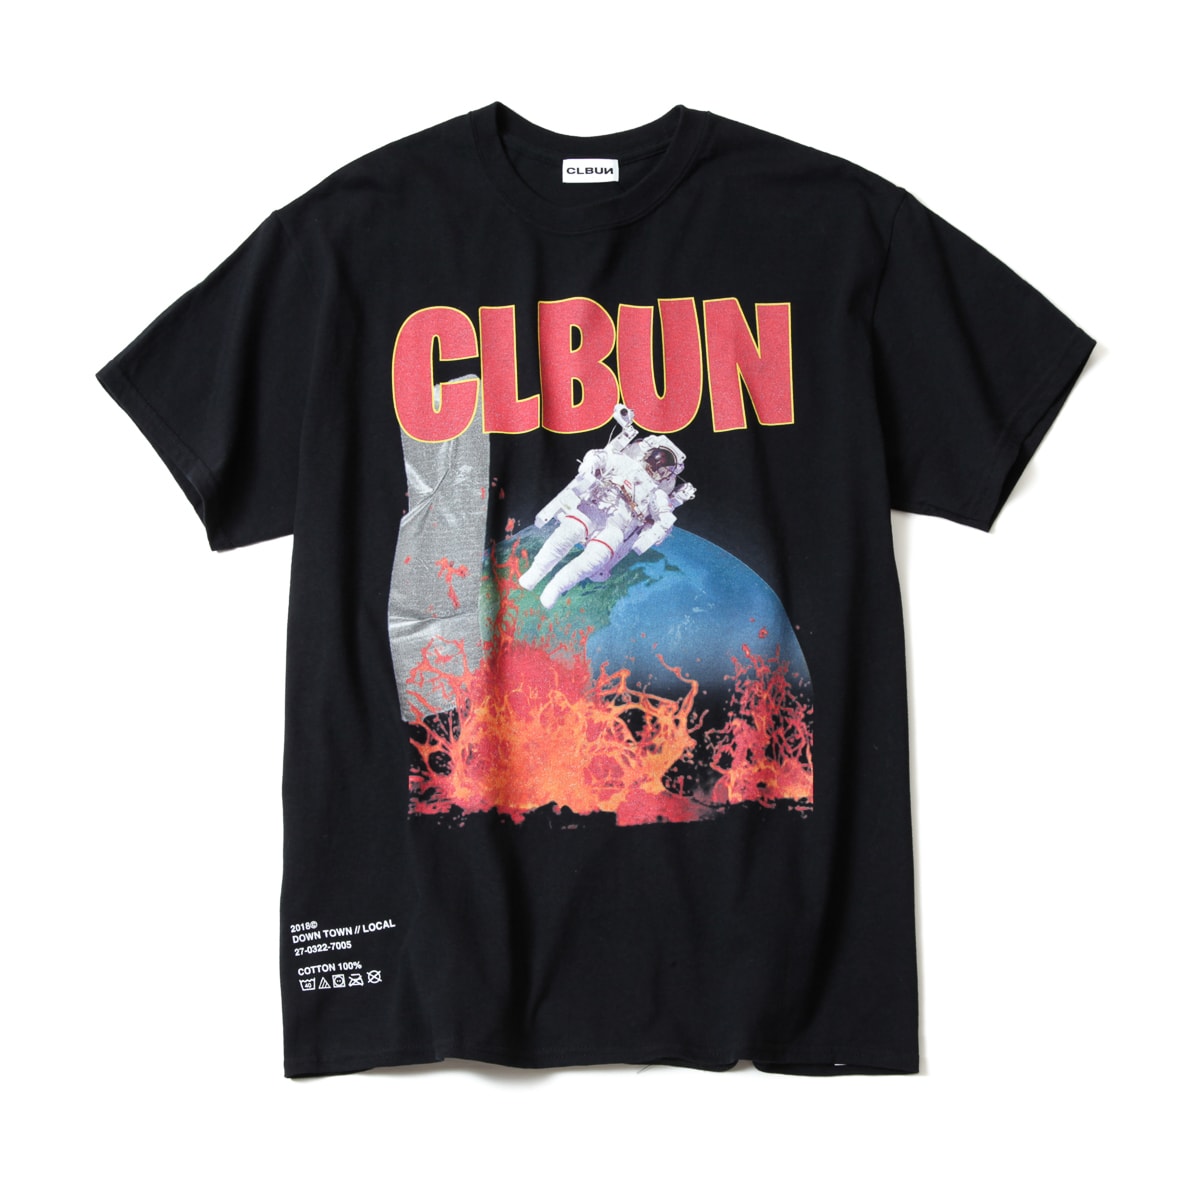 主役級のTシャツのみで構成された CLBUN “I HATE SUMMER” コレクション Travis Scottのシャウトから始まる60分超えのロングMIXも同時公開 そのユニークなアプローチにより、日に日にカルト的な人気が増している〈CLBUN（シーエルビーユーエヌ）〉が、“I HATE SUMMER”と題したTシャツコレクションをリリースした。本格的な夏の到来に先駆けて、ディレクターのK27T(KENT)が用意したのは、合計5つのデザイン。宇宙をモチーフにしたハードなグラフィックはフロント/バックの両面プリントで、ポケットTシャツは“LOCAL DOWNTOWN”のメッセージが入ったK27T(KENT)のルーツを感じさせる仕上がりに。また、前回デリバリーで好評だった“She Lied”Tシャツもブラック、レッド、ホワイトの全3色展開となるほか、〈CLBUN〉の名作である“SENPAI”シリーズには“KEISAN”というパンクな1枚が追加された。  すでにSOLD OUTのものが、“I HATE SUMMER”コレクションは現在『clbun.com』にて販売中なので、気になる方はお早めに。  また、〈CLBUN〉のドロップと言えば皆さんお待ちかね、コレクションにフックした新たなMIX音源も公開されている。何とシャウトは……Travis Scott（トラヴィス・スコット）ではないか。毎度業界からも評判のMIXなので、通勤、作業BGM、友人とチルの最中などに是非、試聴してみてはいかがだろうか。  Virgil Abloh（ヴァージル・アブロー）の特別インタビューや、〈BAPE®️（ベイプ）〉の2018年秋冬コレクションのルックブックなど、その他の最新ファッションニュースもあわせてご確認を。